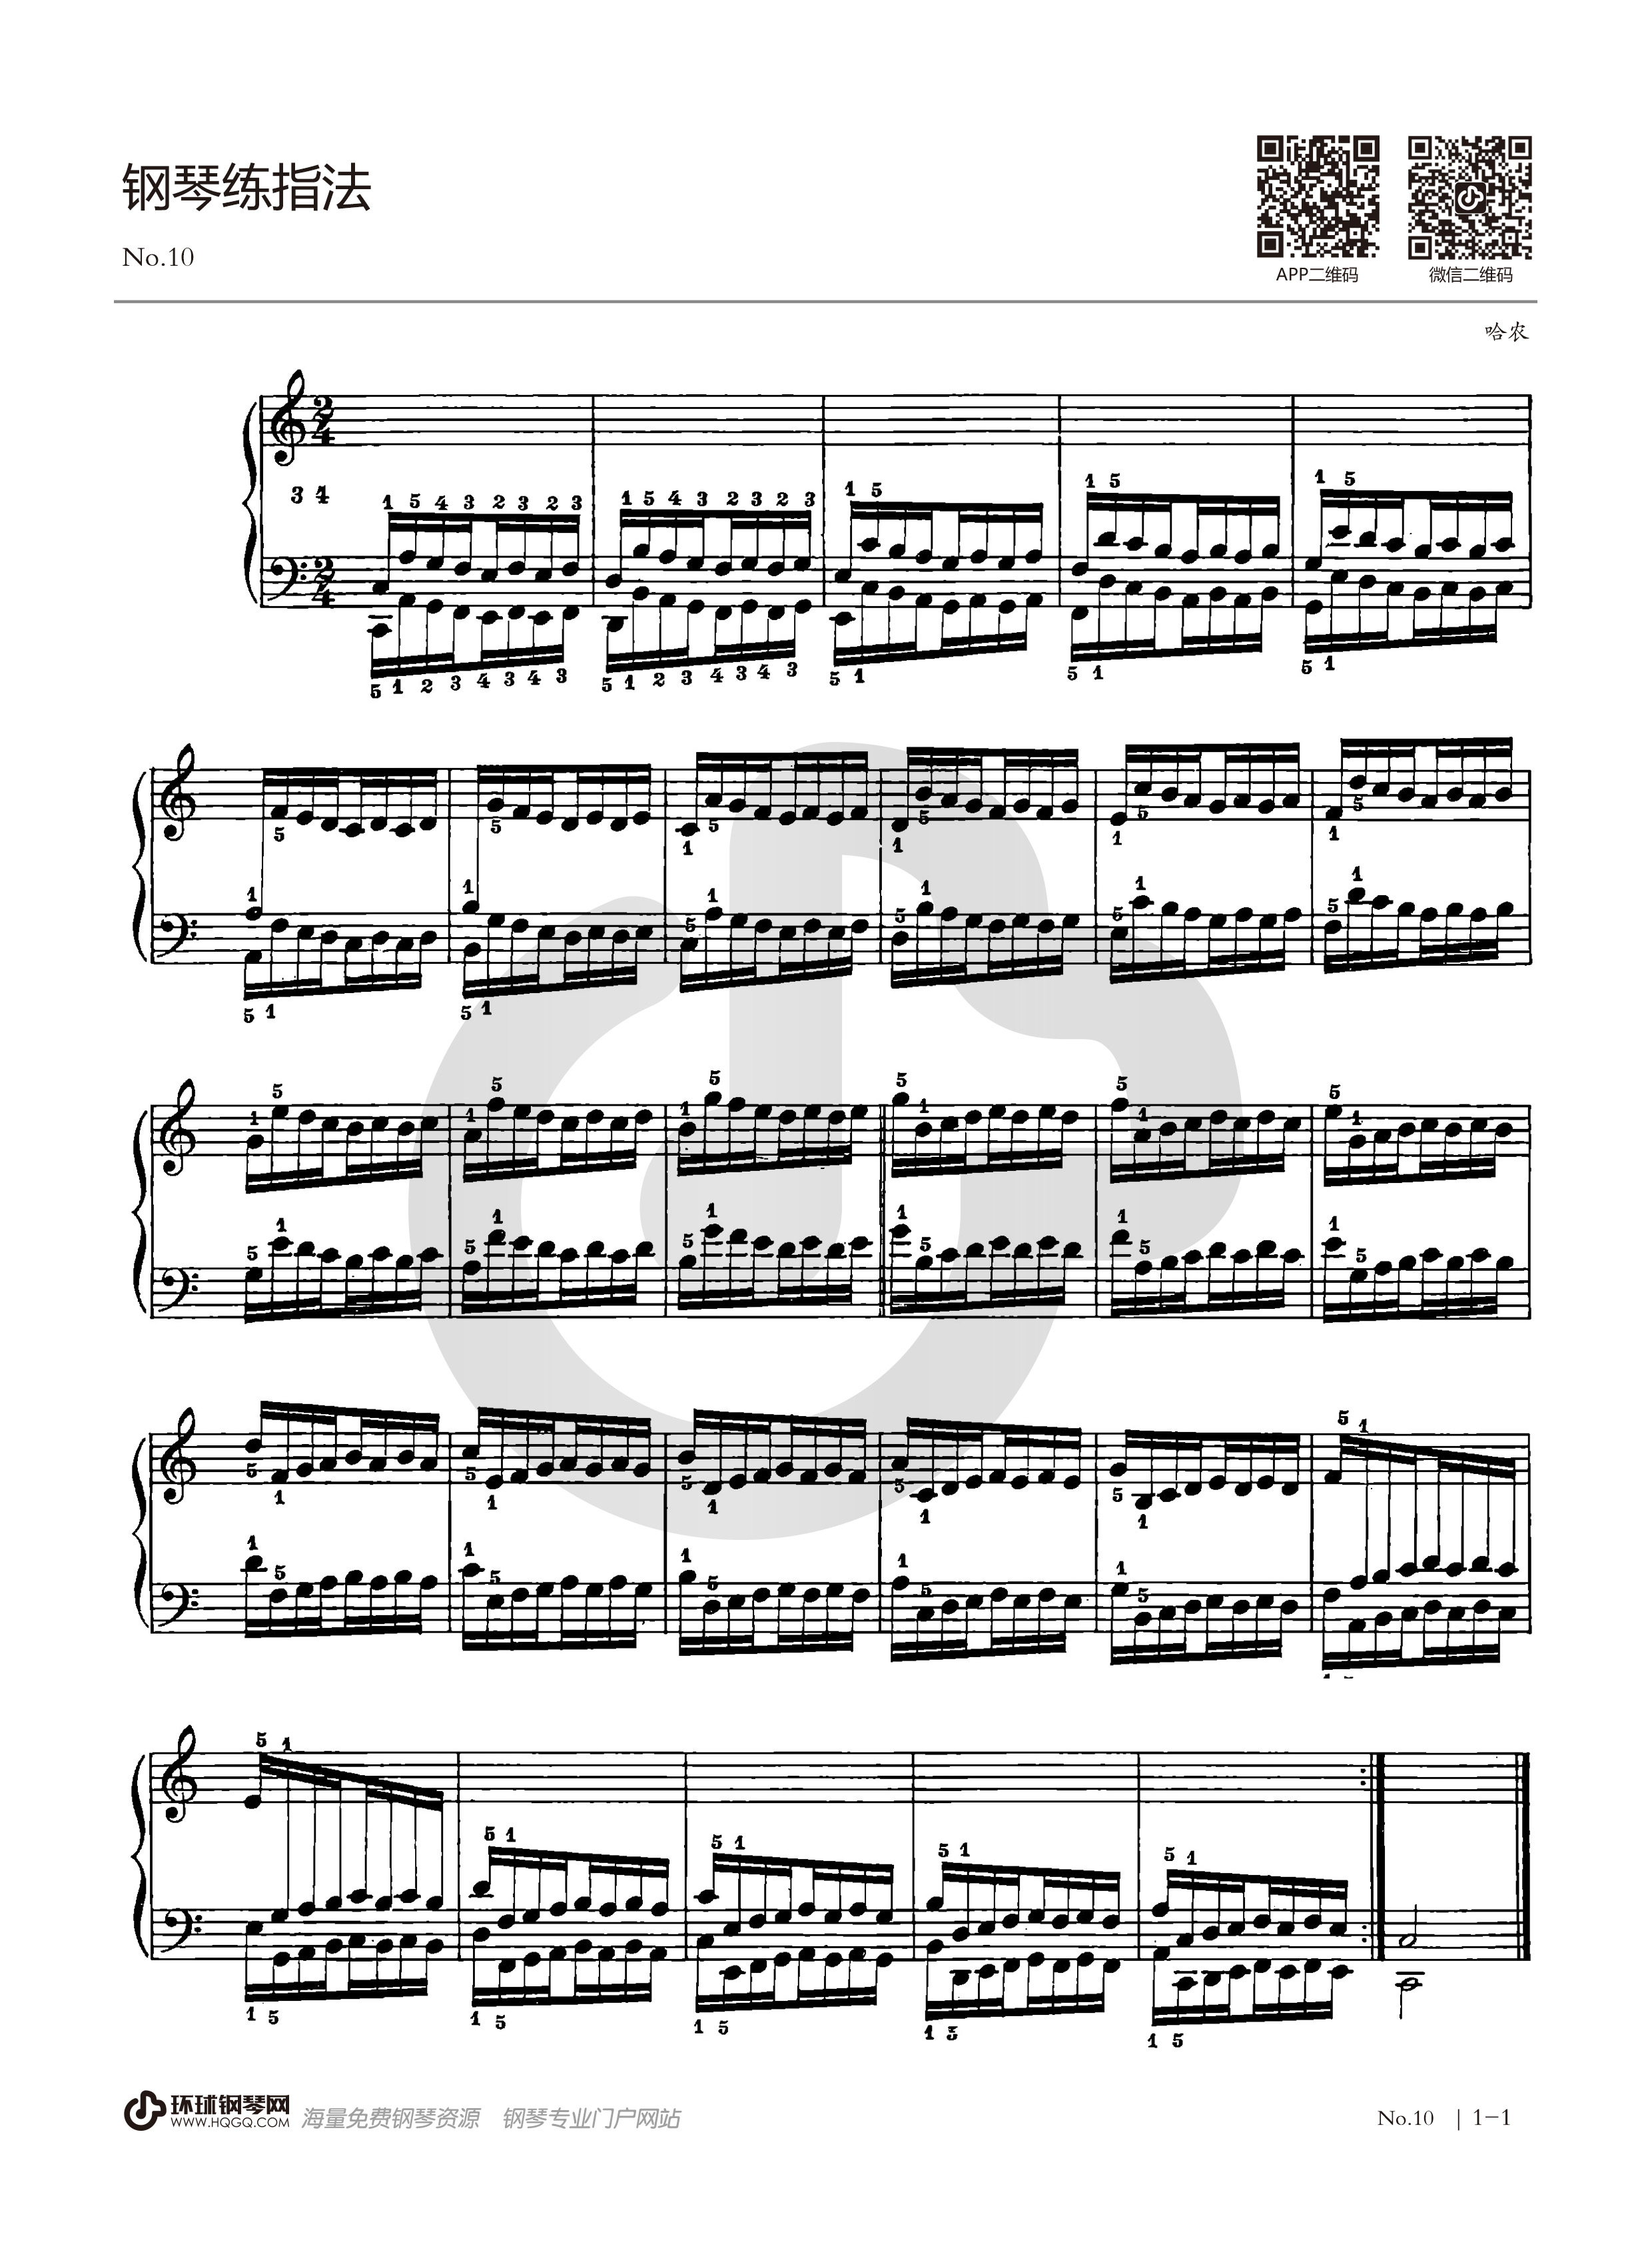 哈农1—10条钢琴谱图片